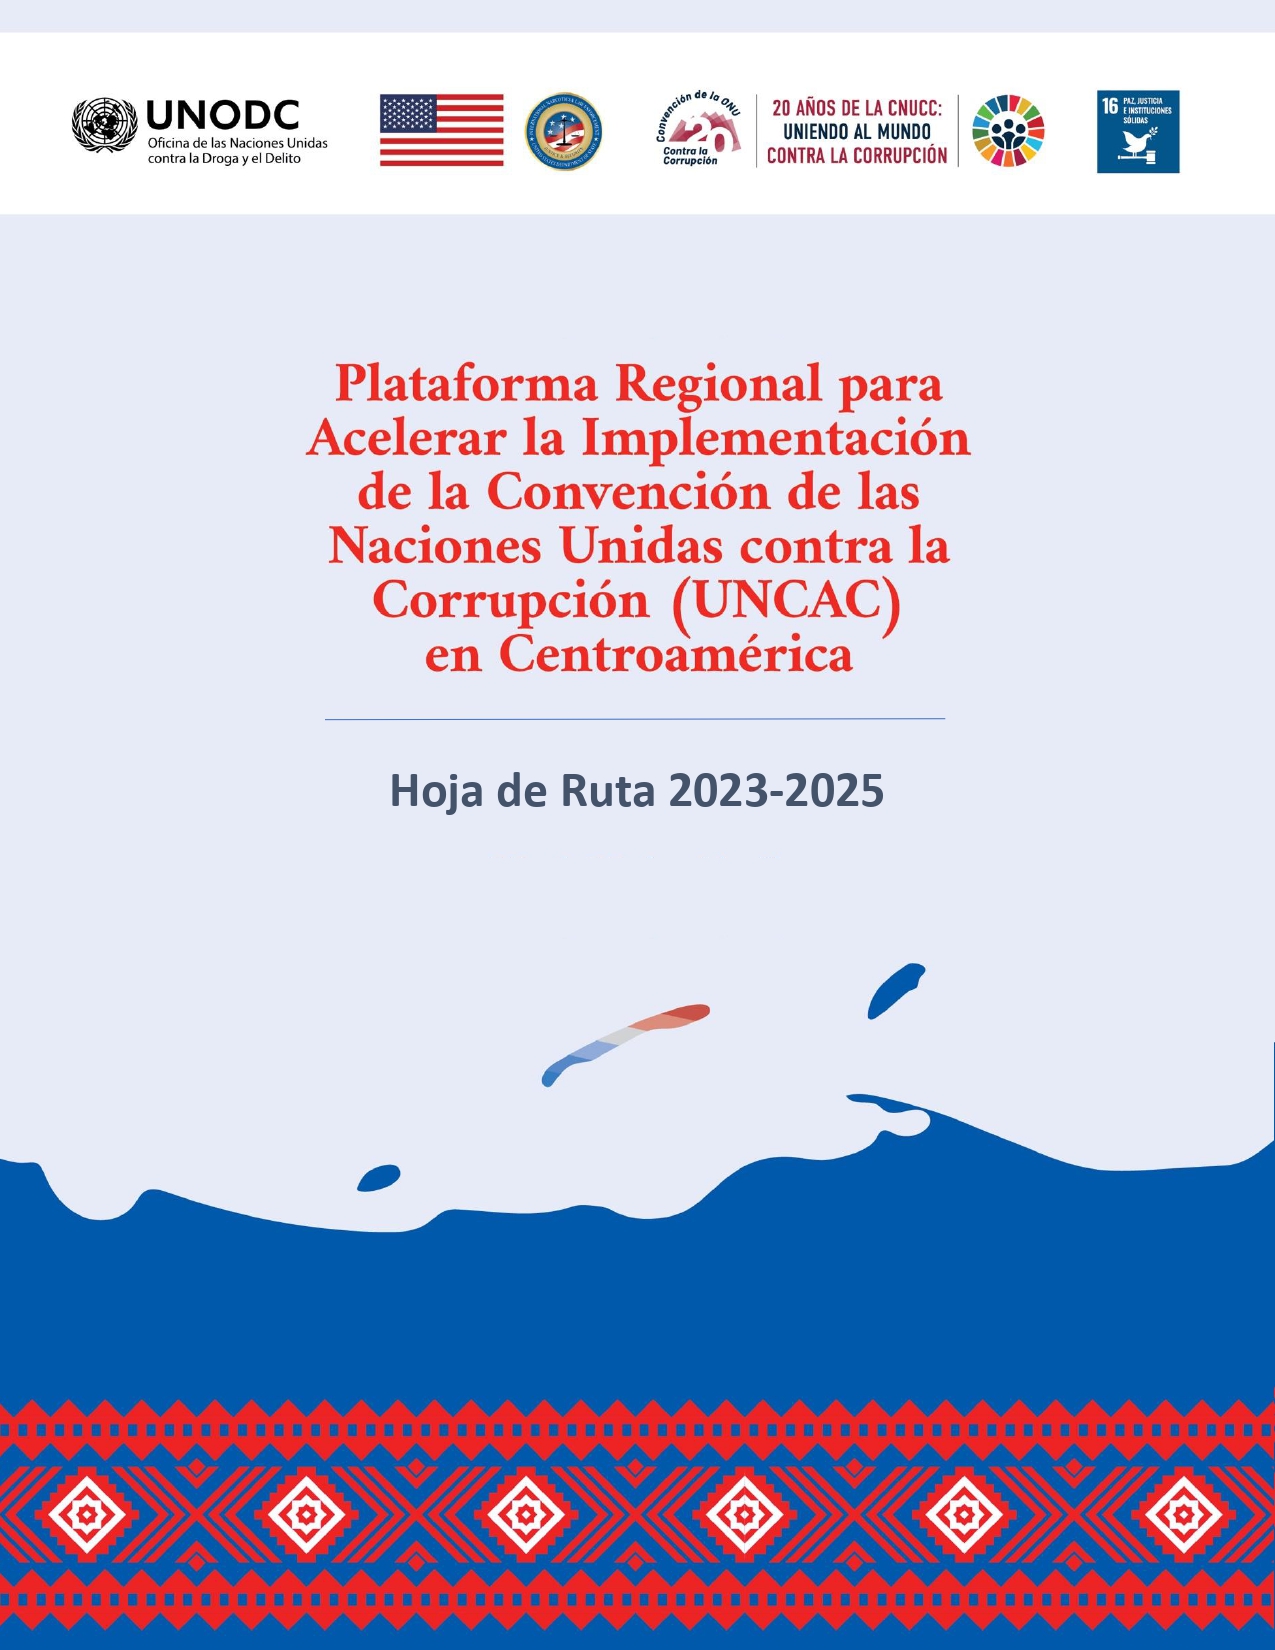 Portada de la hoja de ruta de la Plataforma Regional para Acelerar la Implementación de la UNCAC en Centroamérica